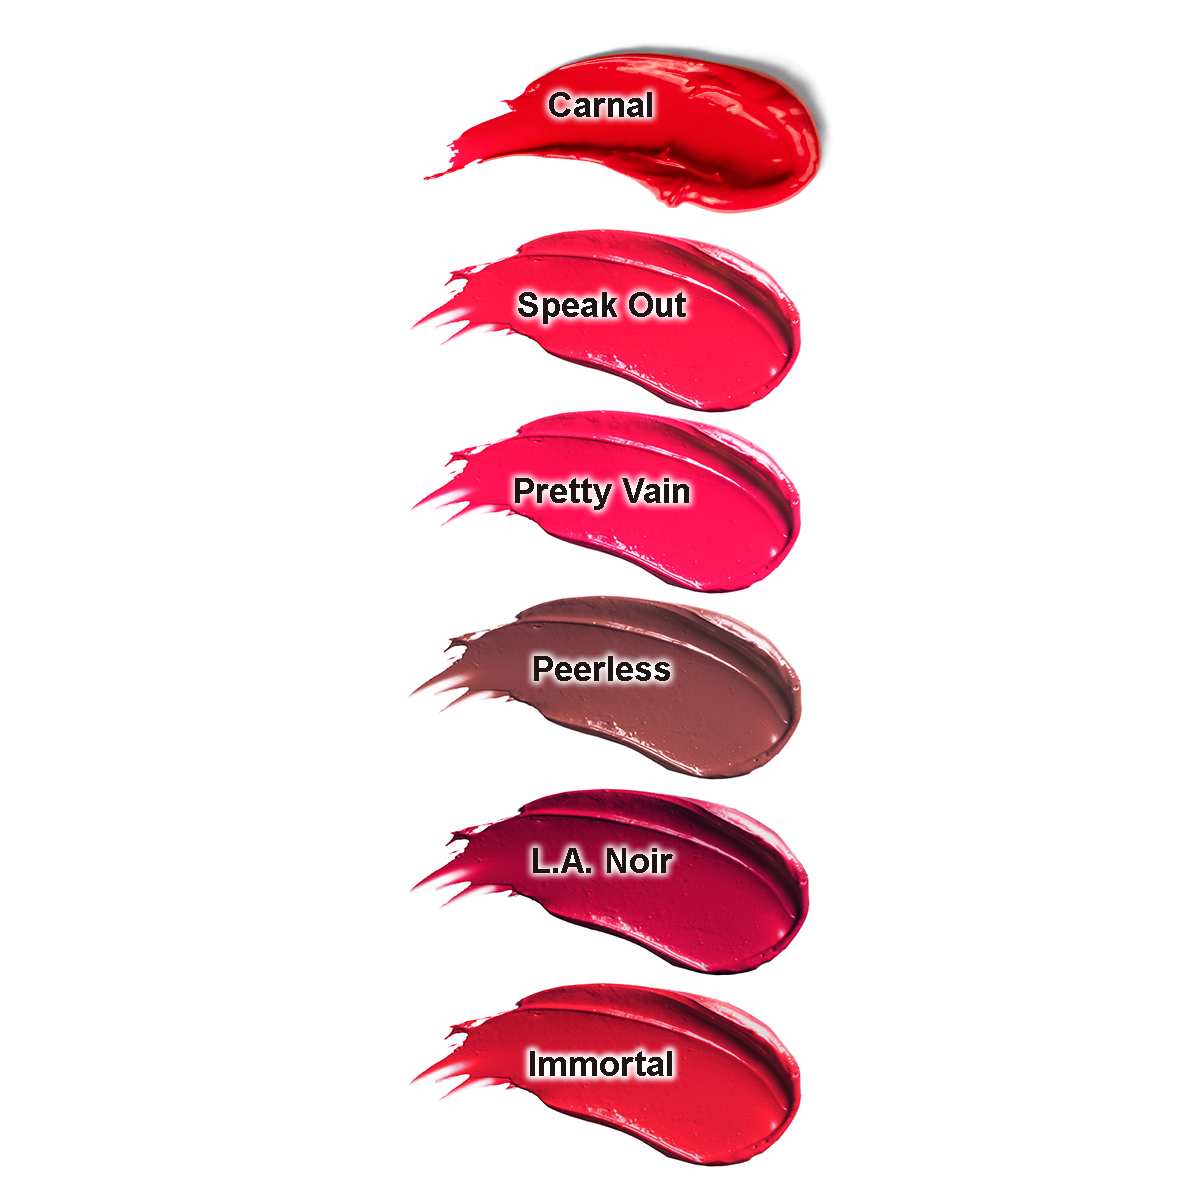 Estee Lauder(tm) Pure Color Envy Sculpting Lipstick